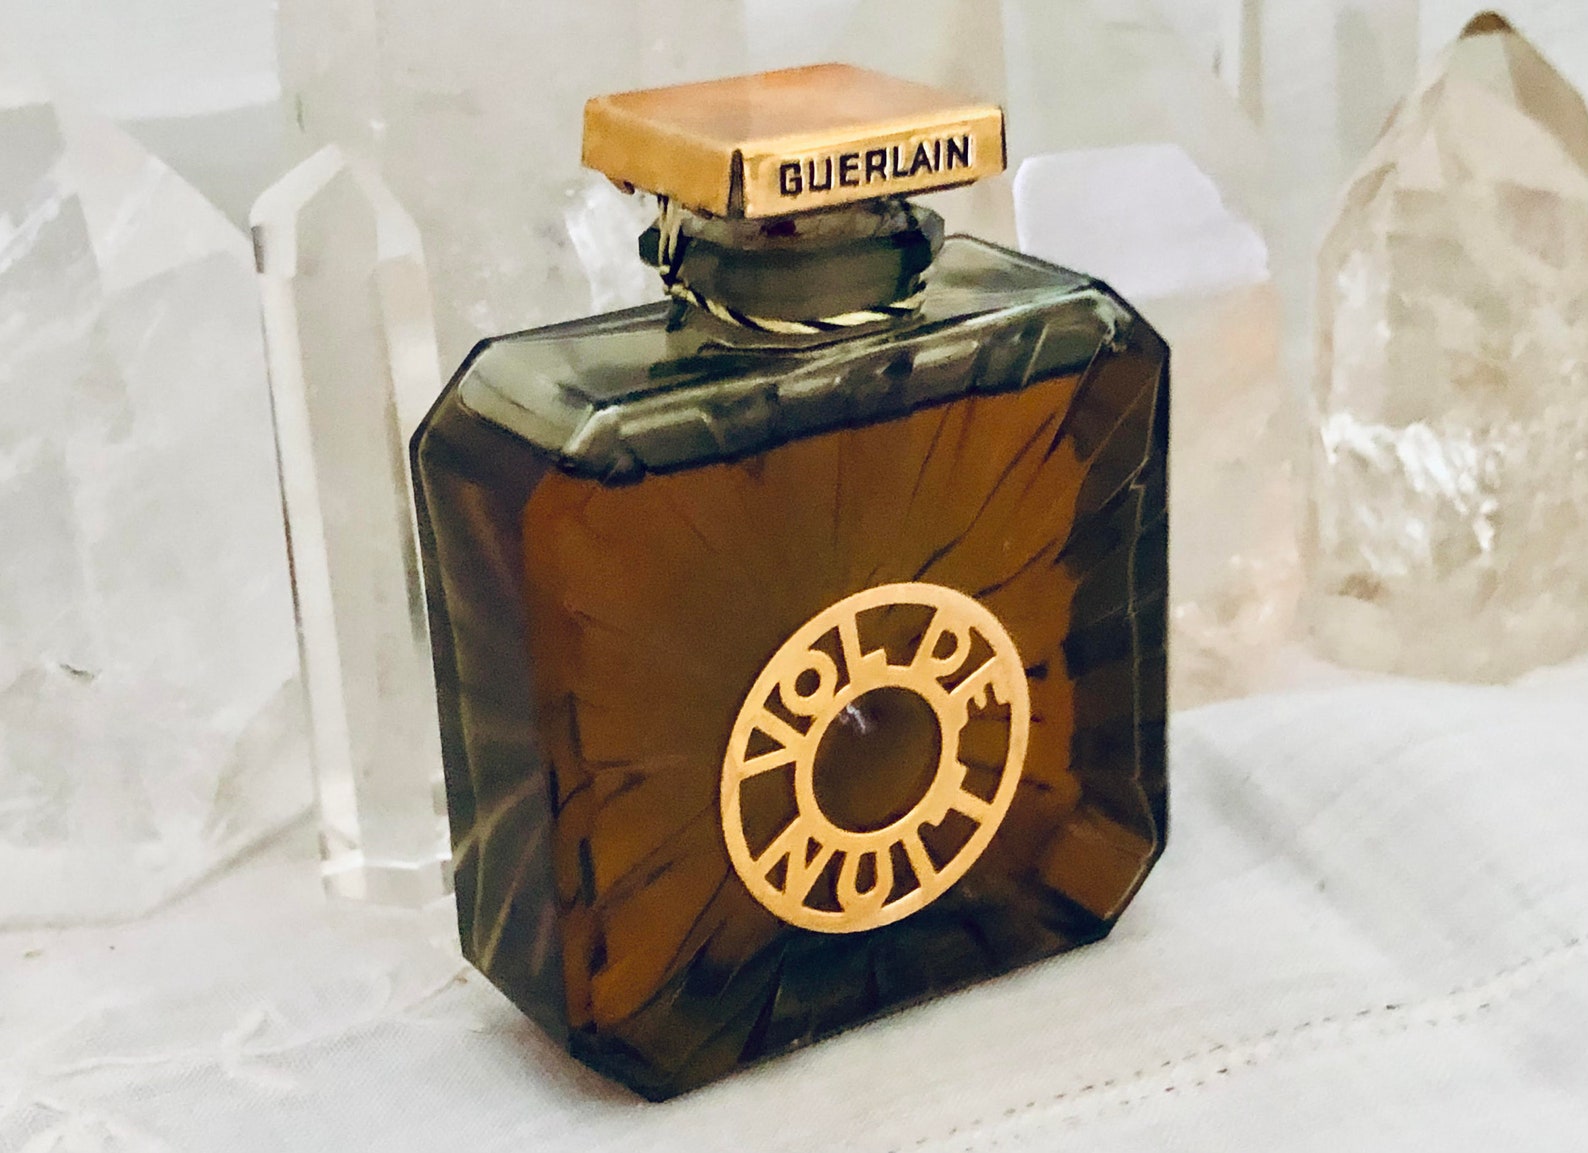 Guerlain Vol de Nuit 30 ml. or 1 oz. Flacon Pure Parfum | Etsy